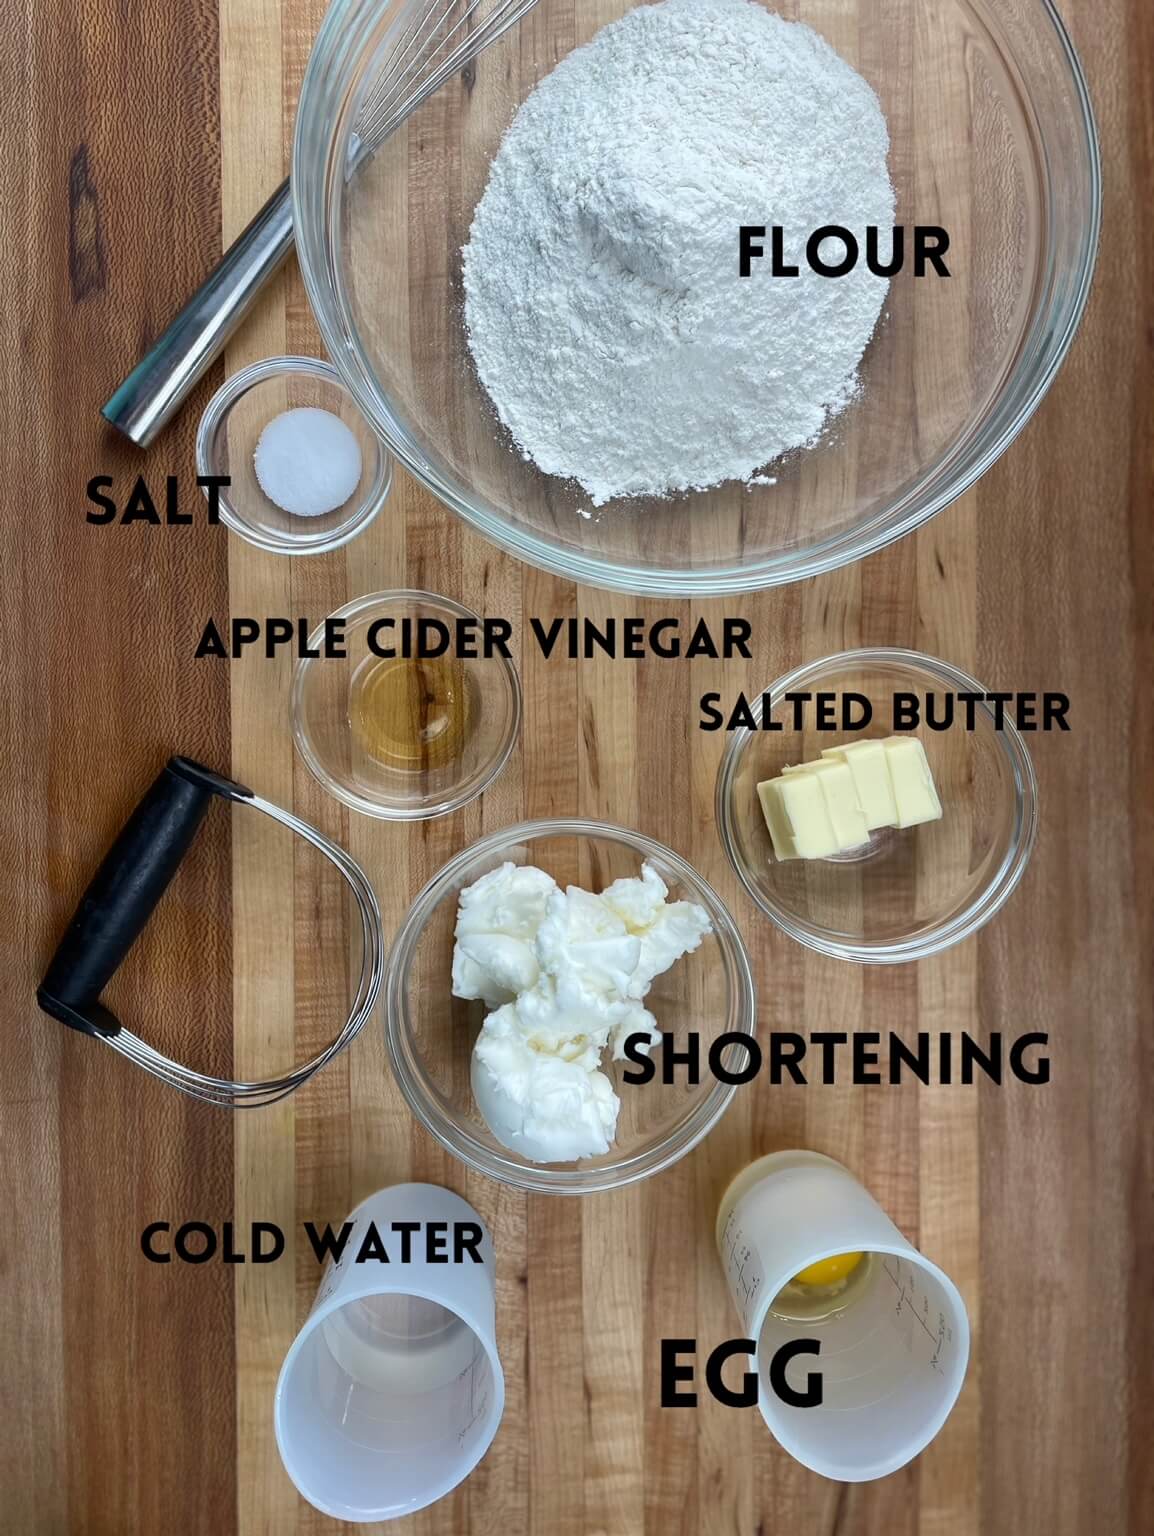 Egg and Vinegar Piee Crust Ingredients